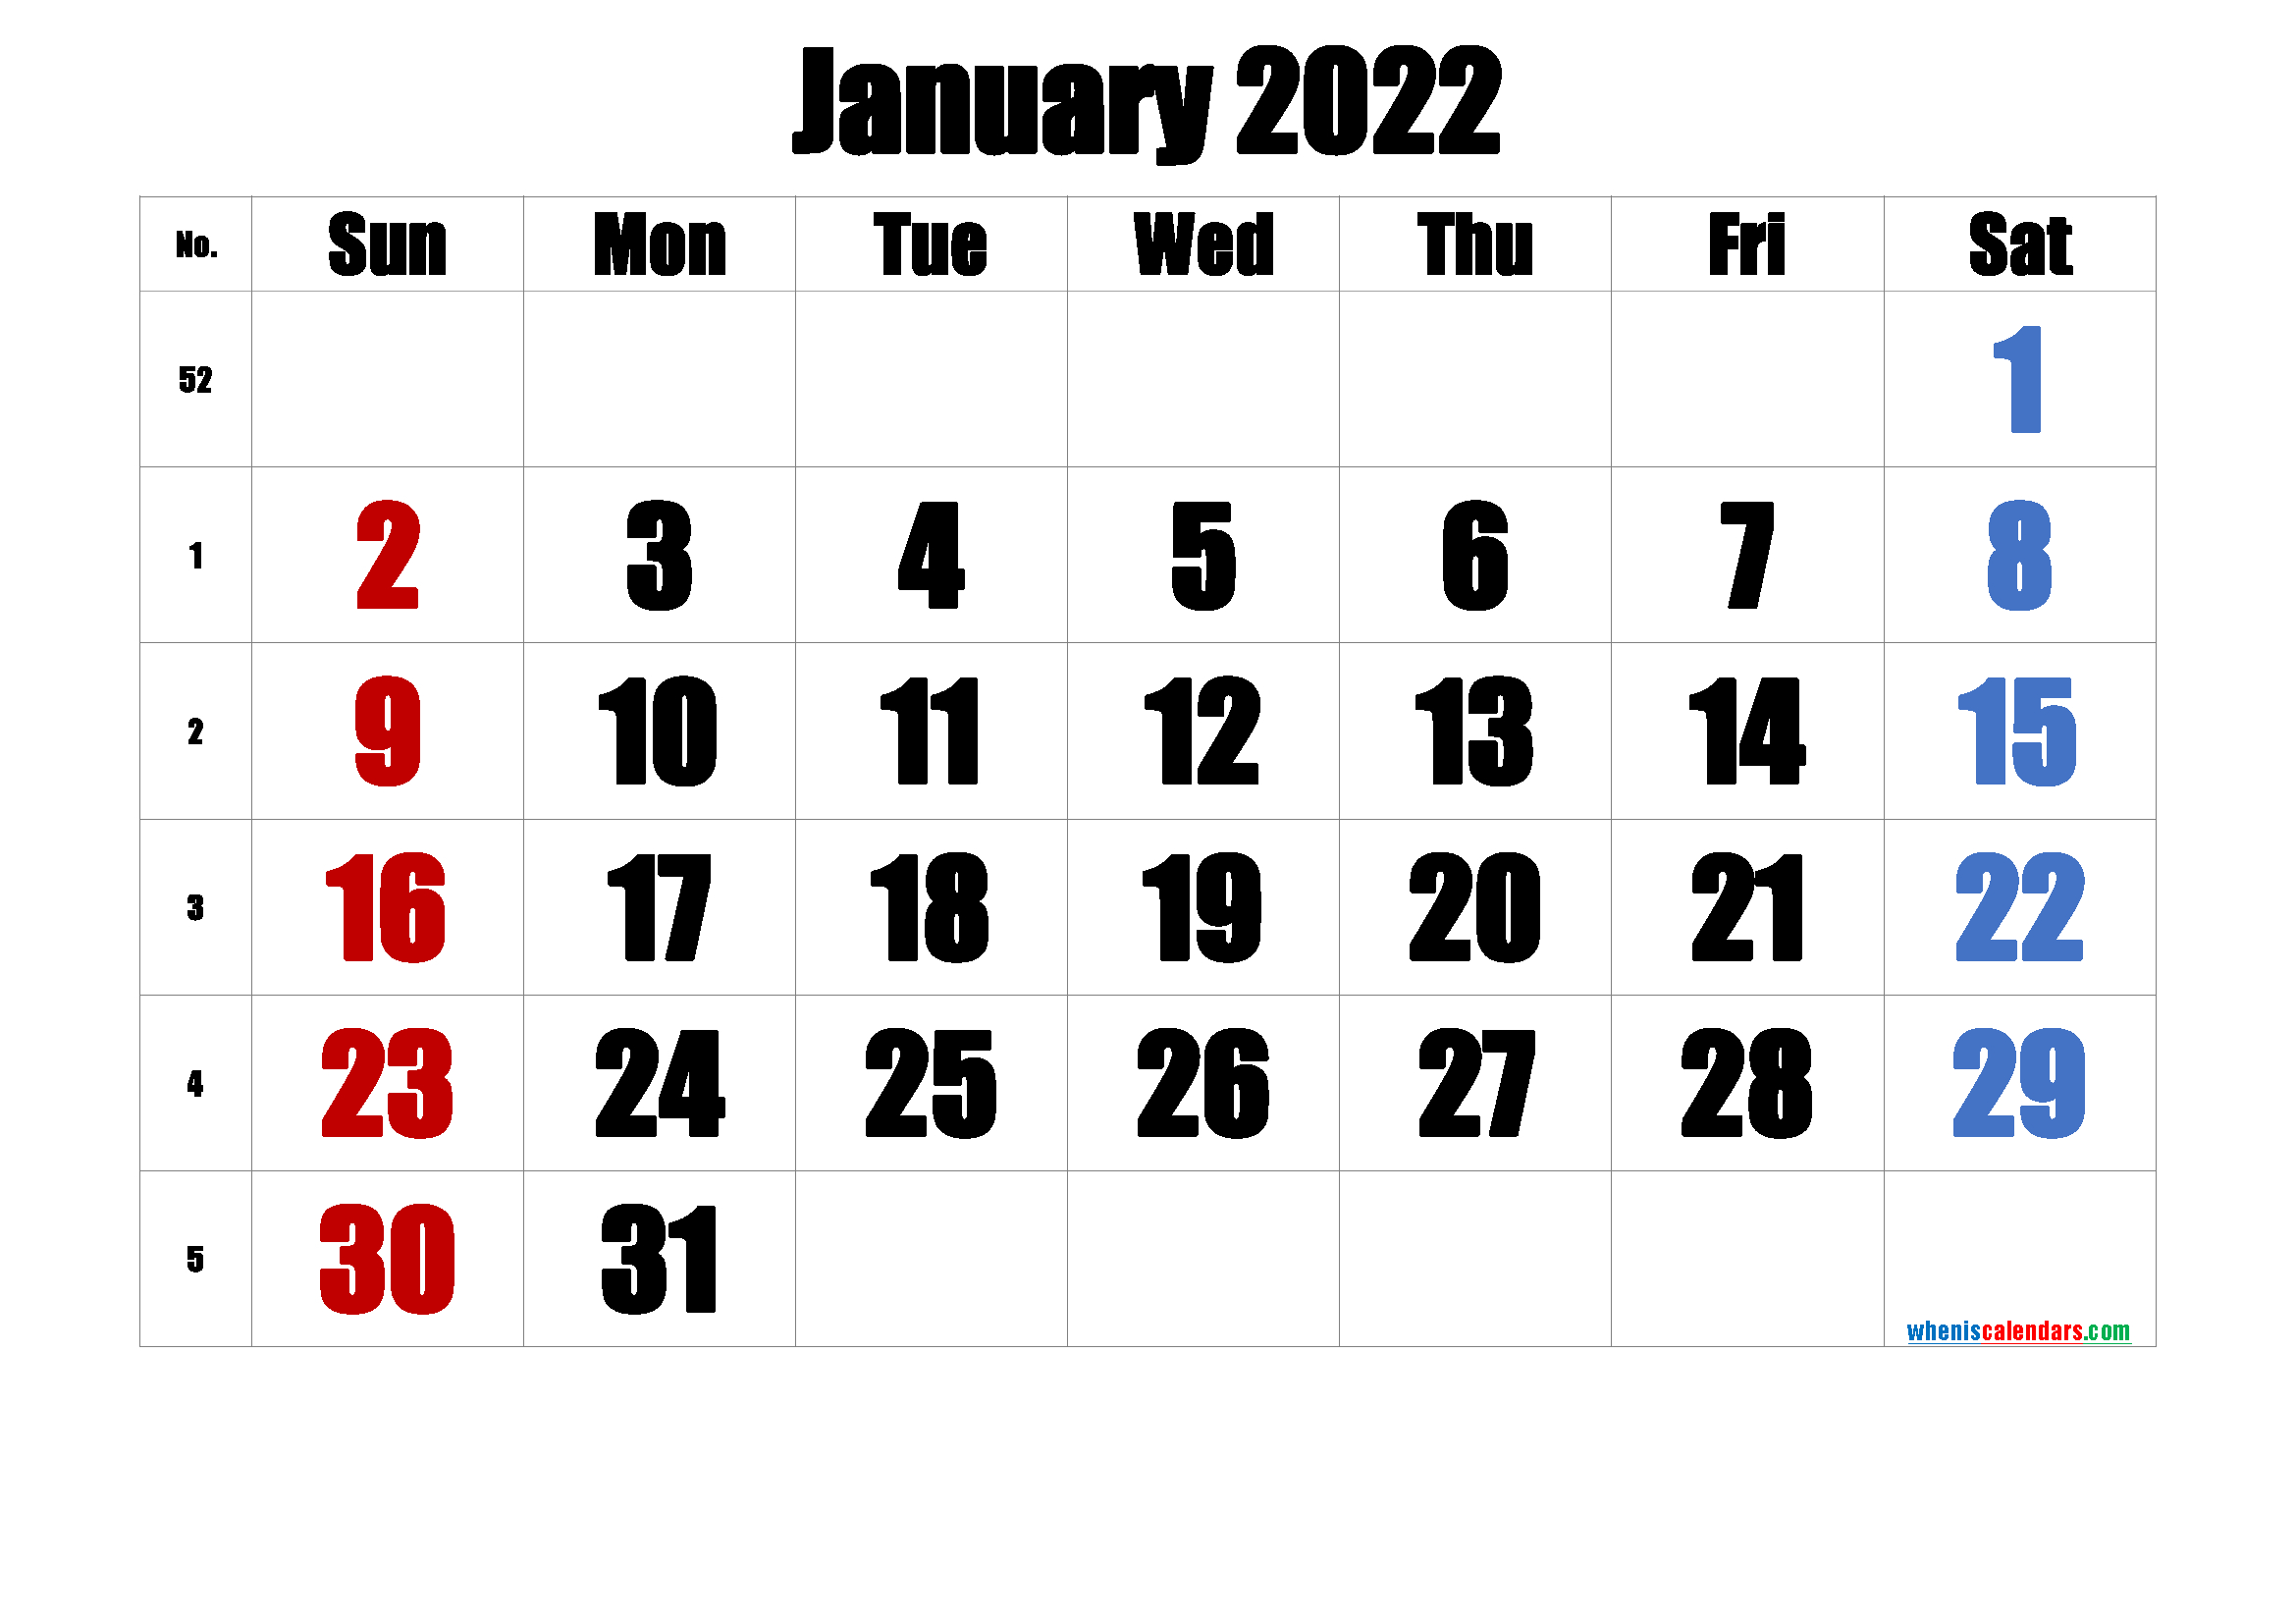 Get Lunar Calendar February 2022